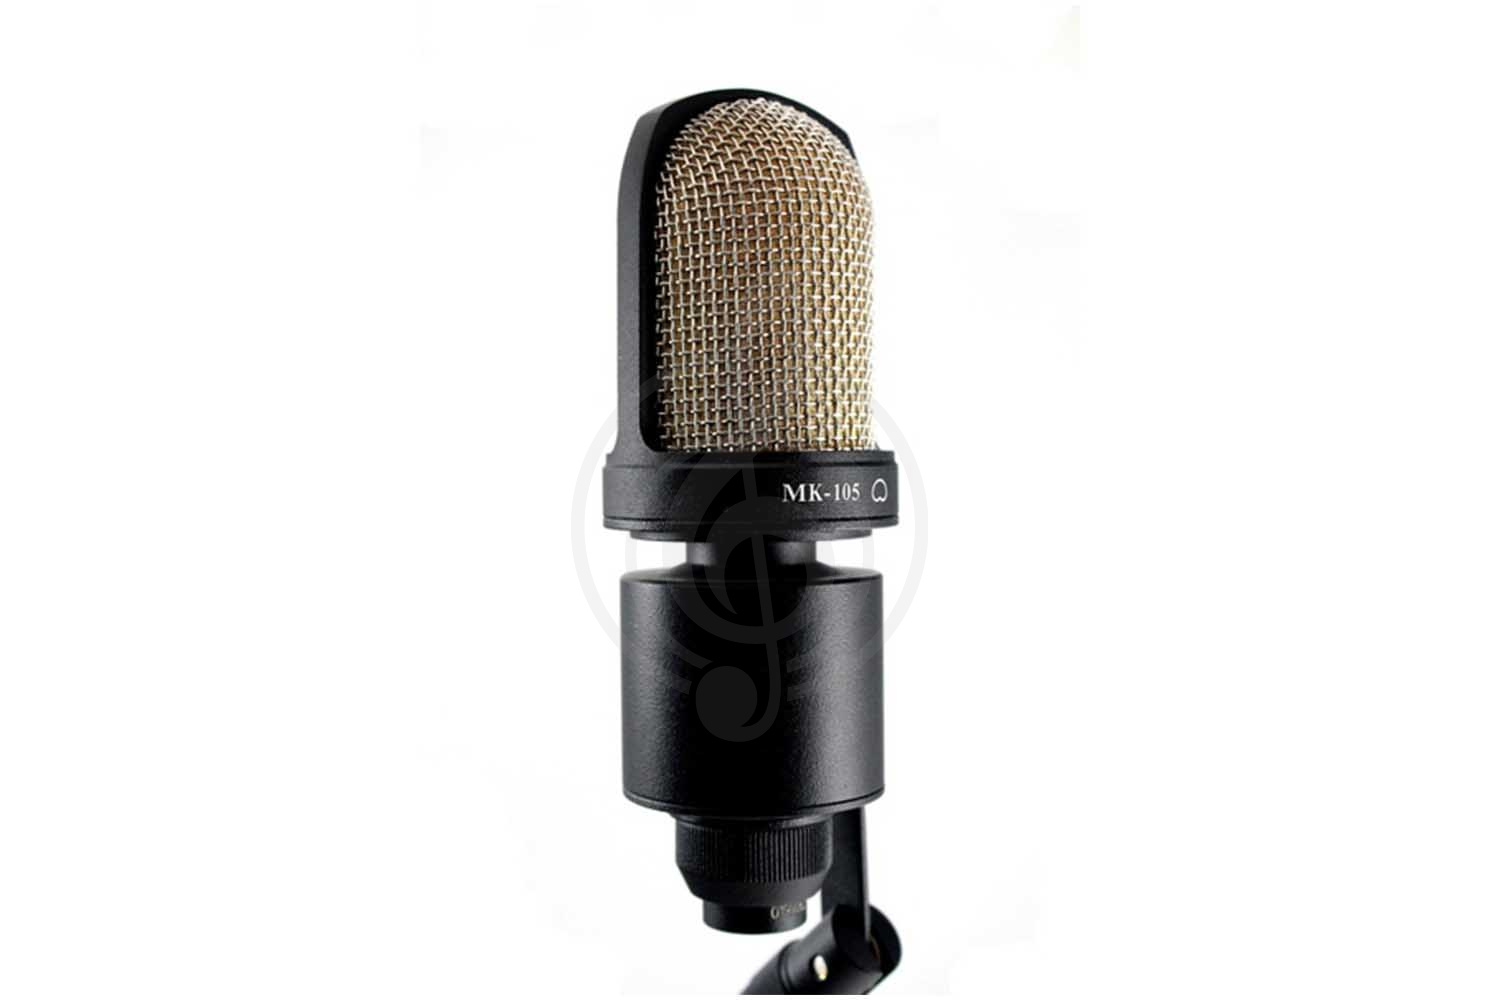 Конденсаторный студийный микрофон Конденсаторные студийные микрофоны Октава Октава МК-105-b - Микрофон студийный конденсаторный МК-105-b - фото 1